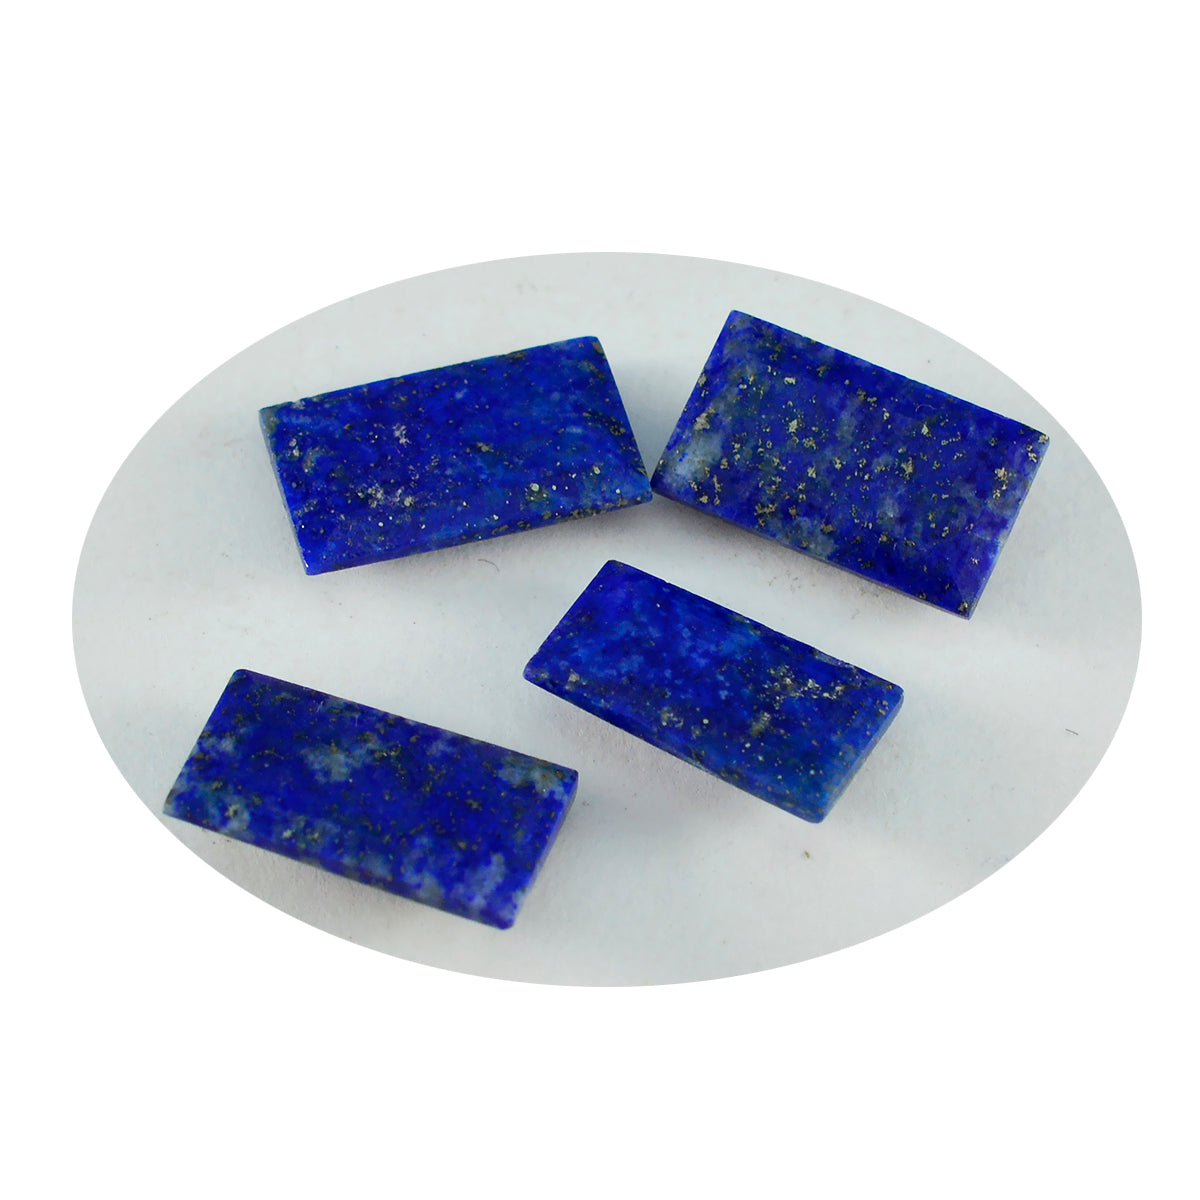 Riyogems 1PC Genuine Blue Lapis Lazuli Faceted 5x10 mm  Baguette Shape fantastic Quality Gem